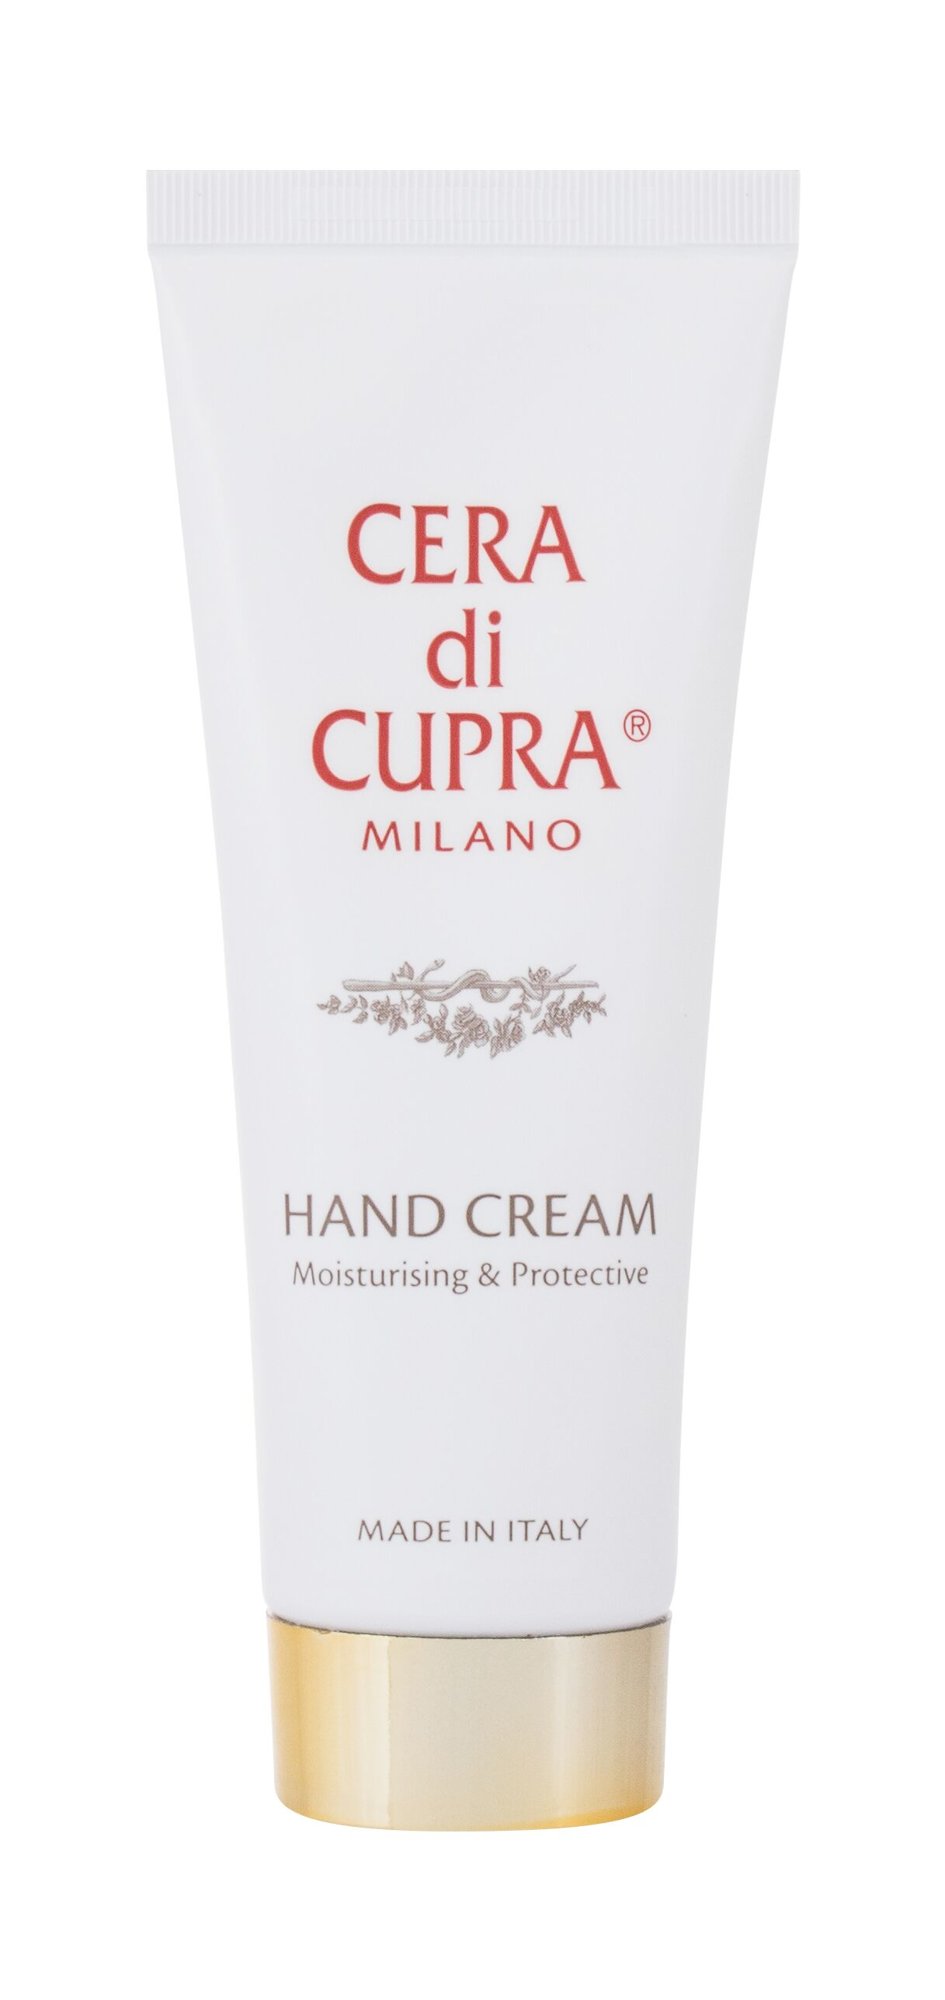 Cera di Cupra Hand Cream Moisturising & Protective rankų kremas